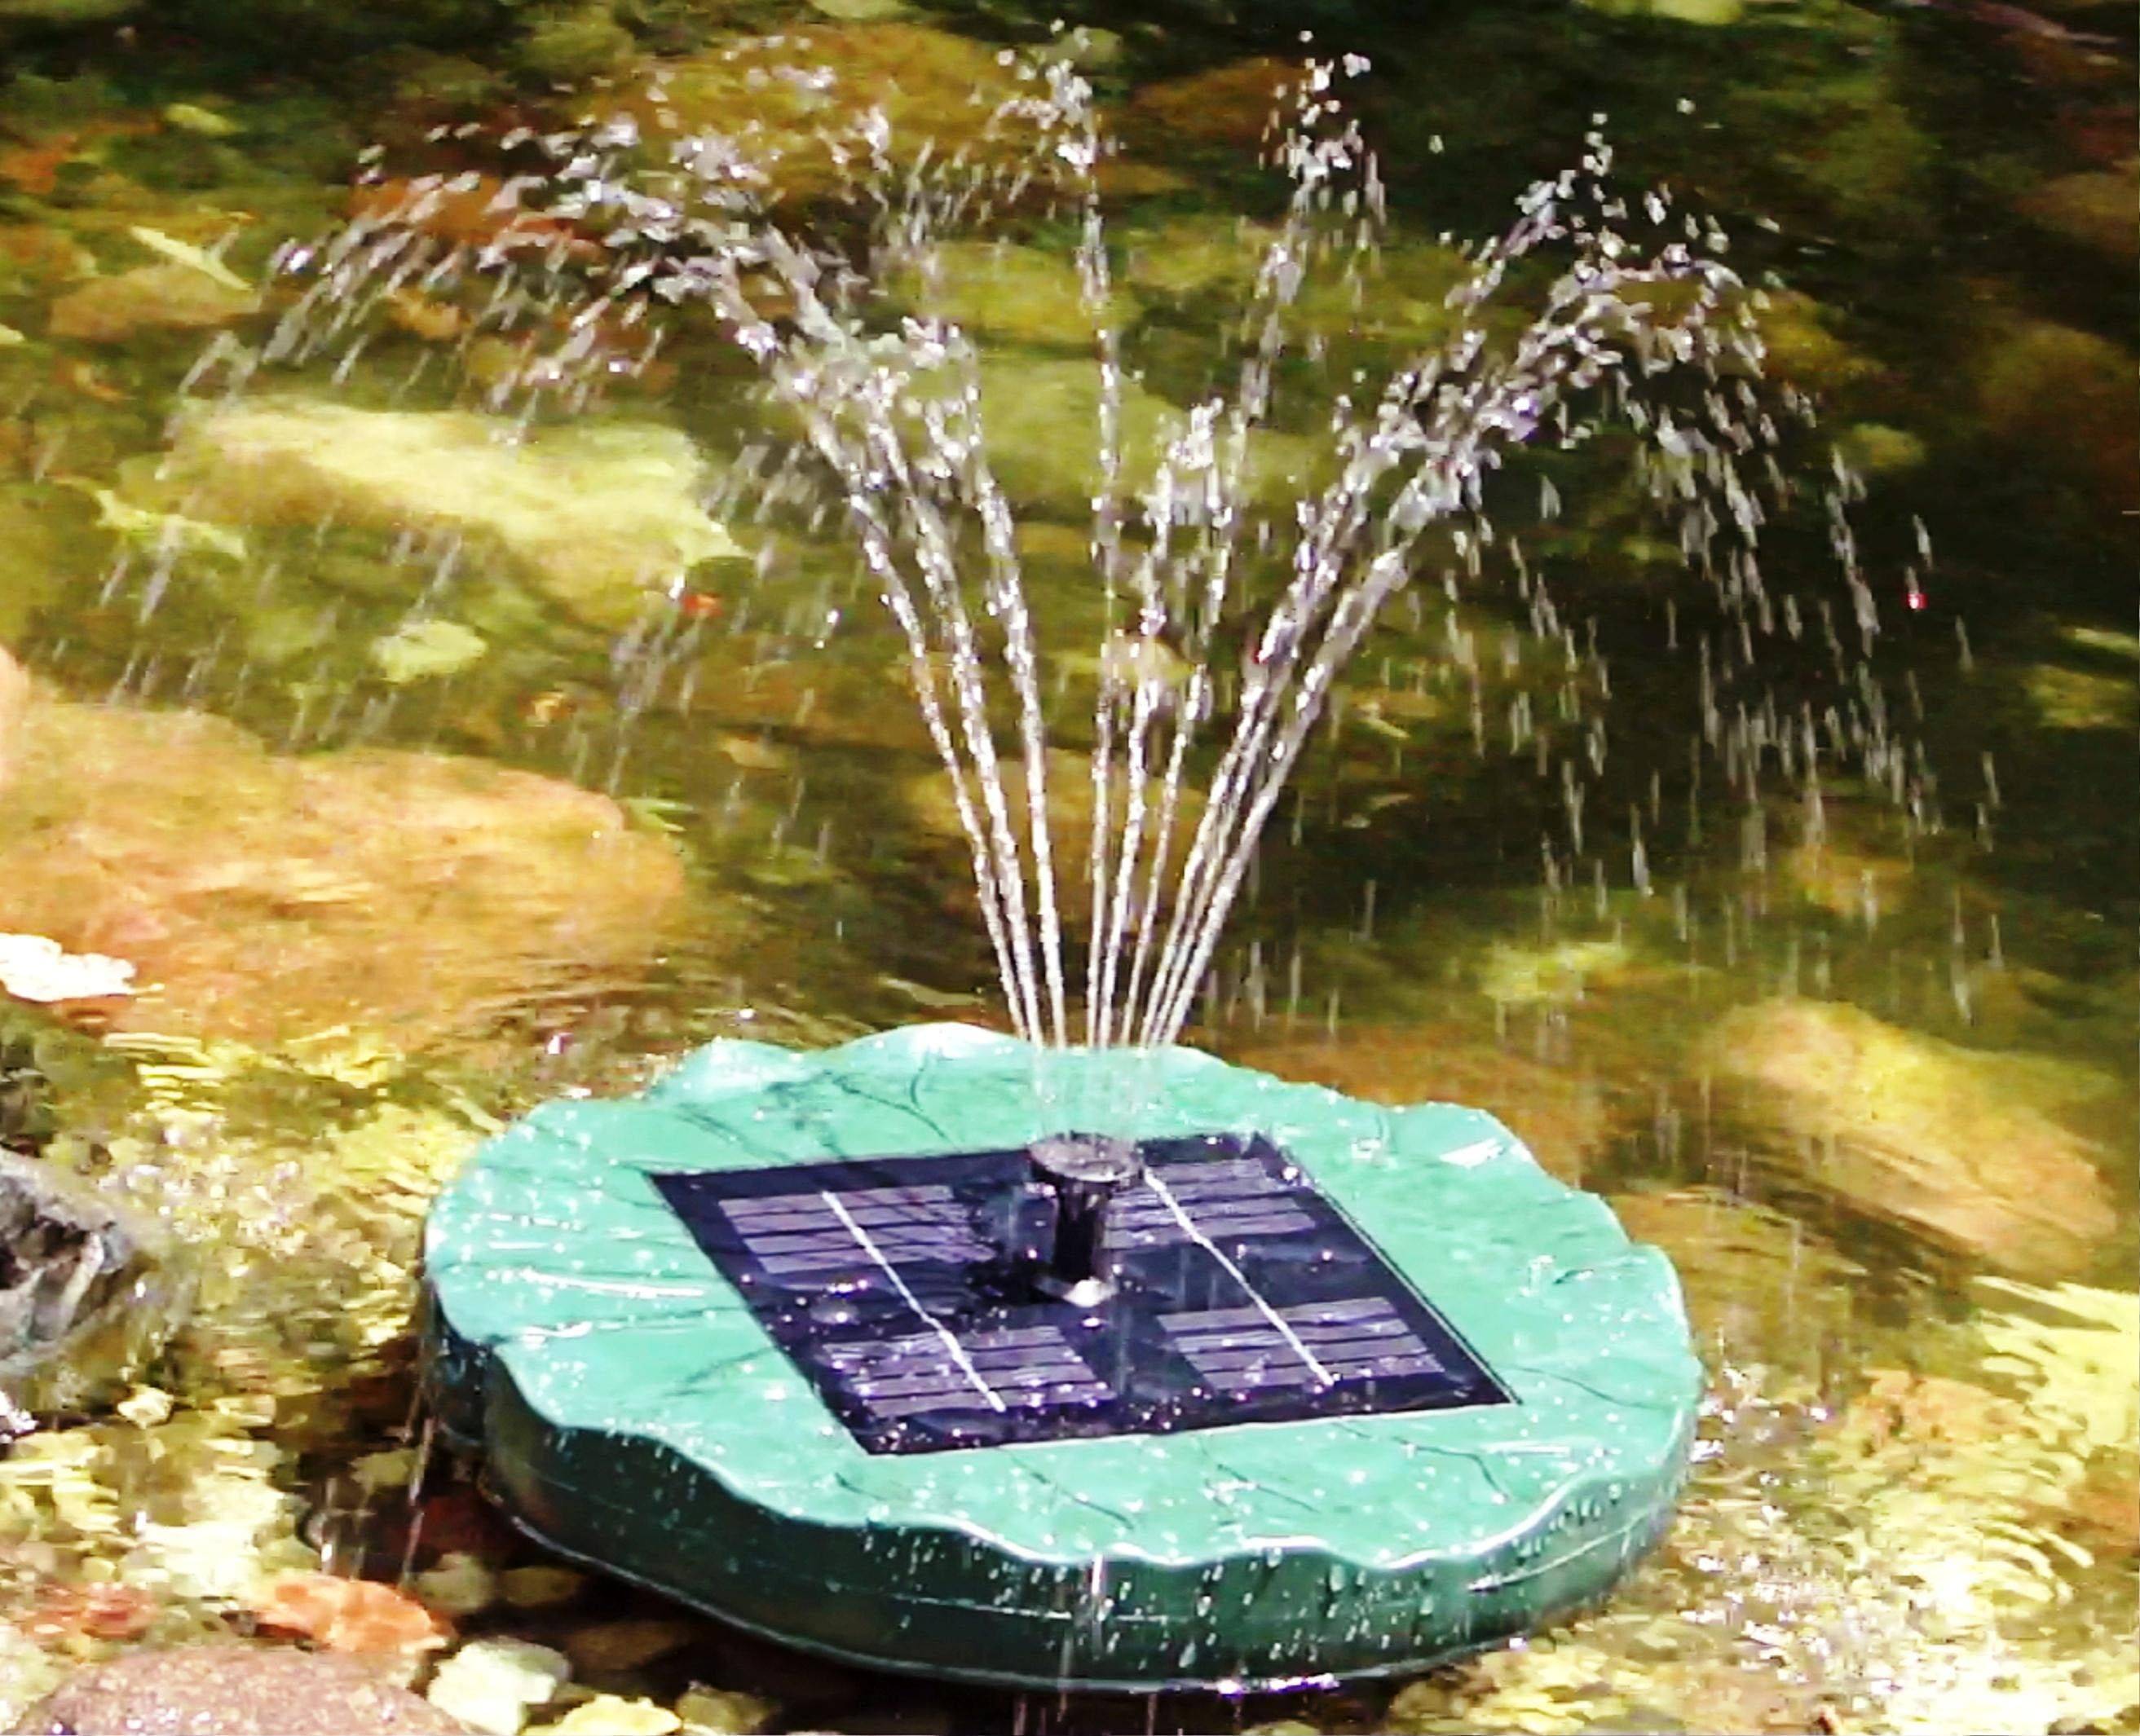 Solarfountain Diysolarfountainideas Solar Fountain